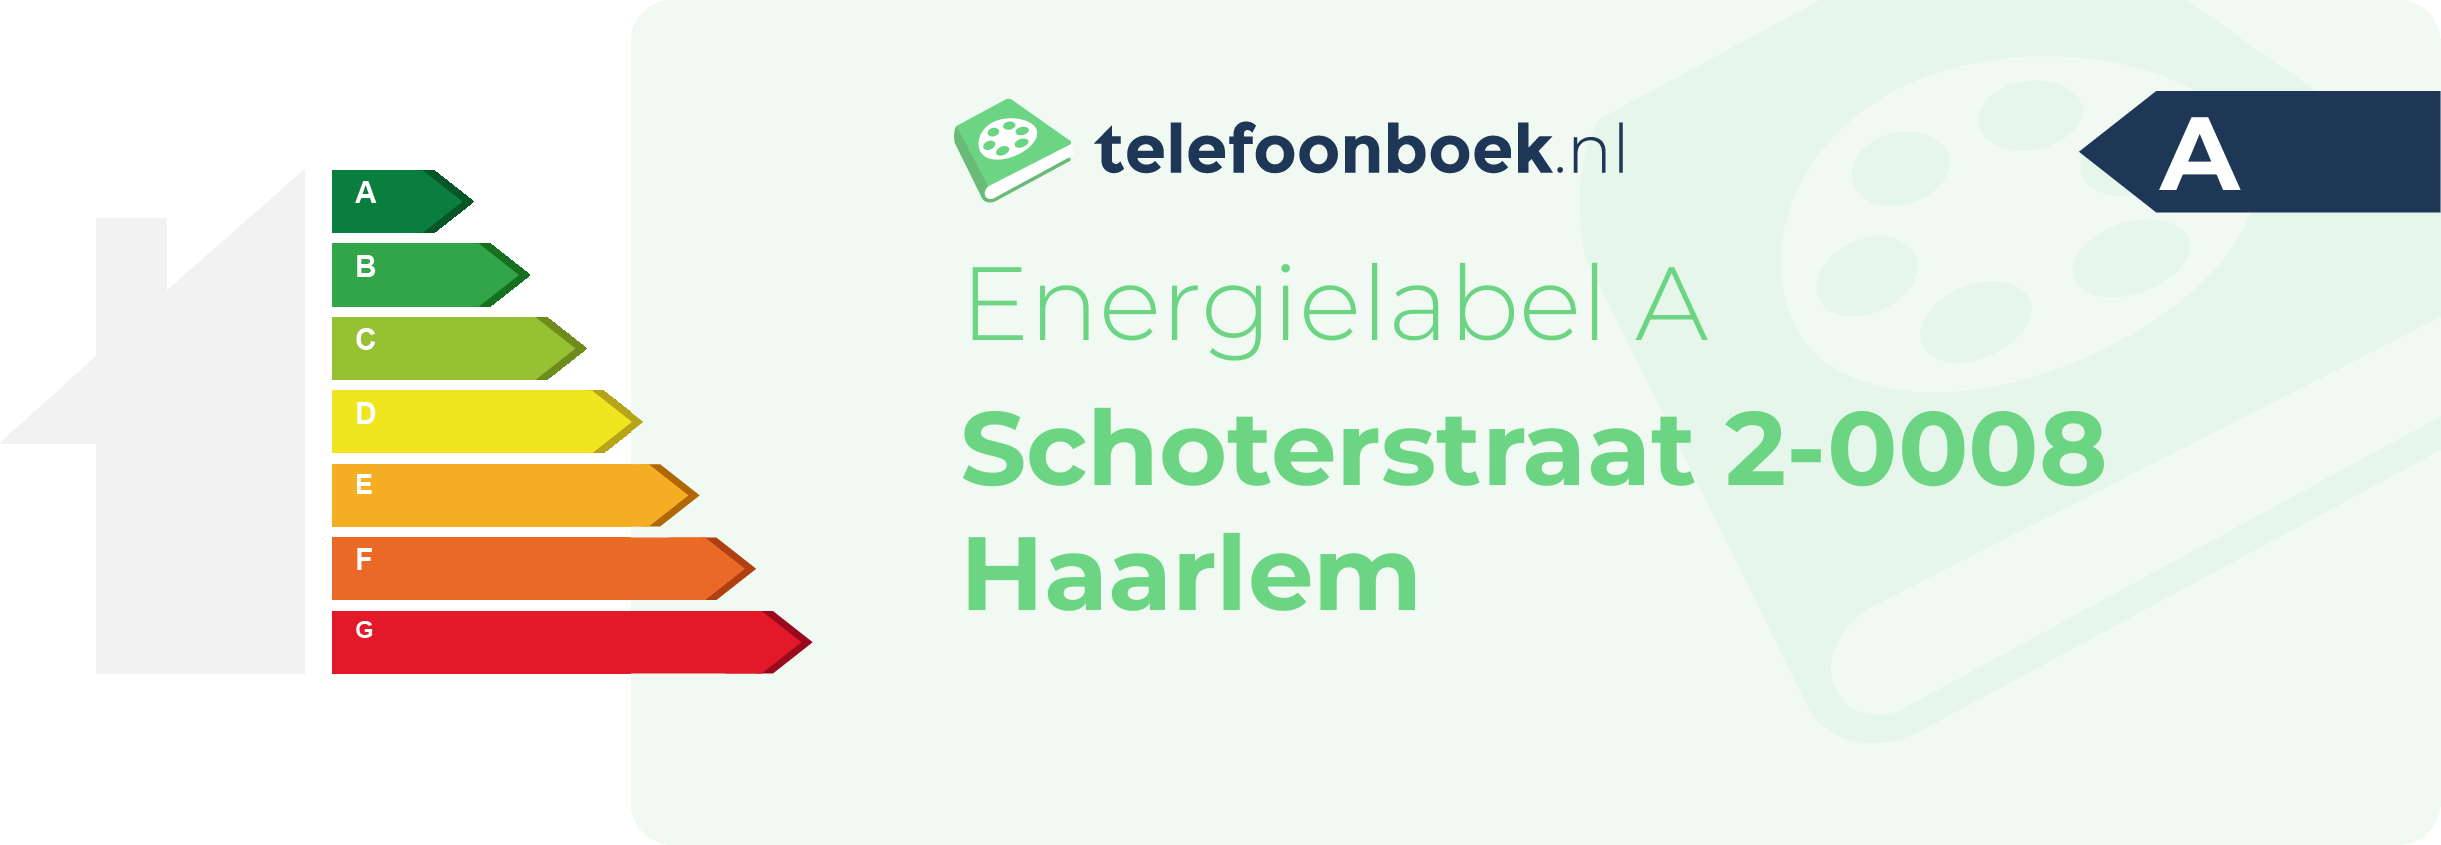 Energielabel Schoterstraat 2-0008 Haarlem